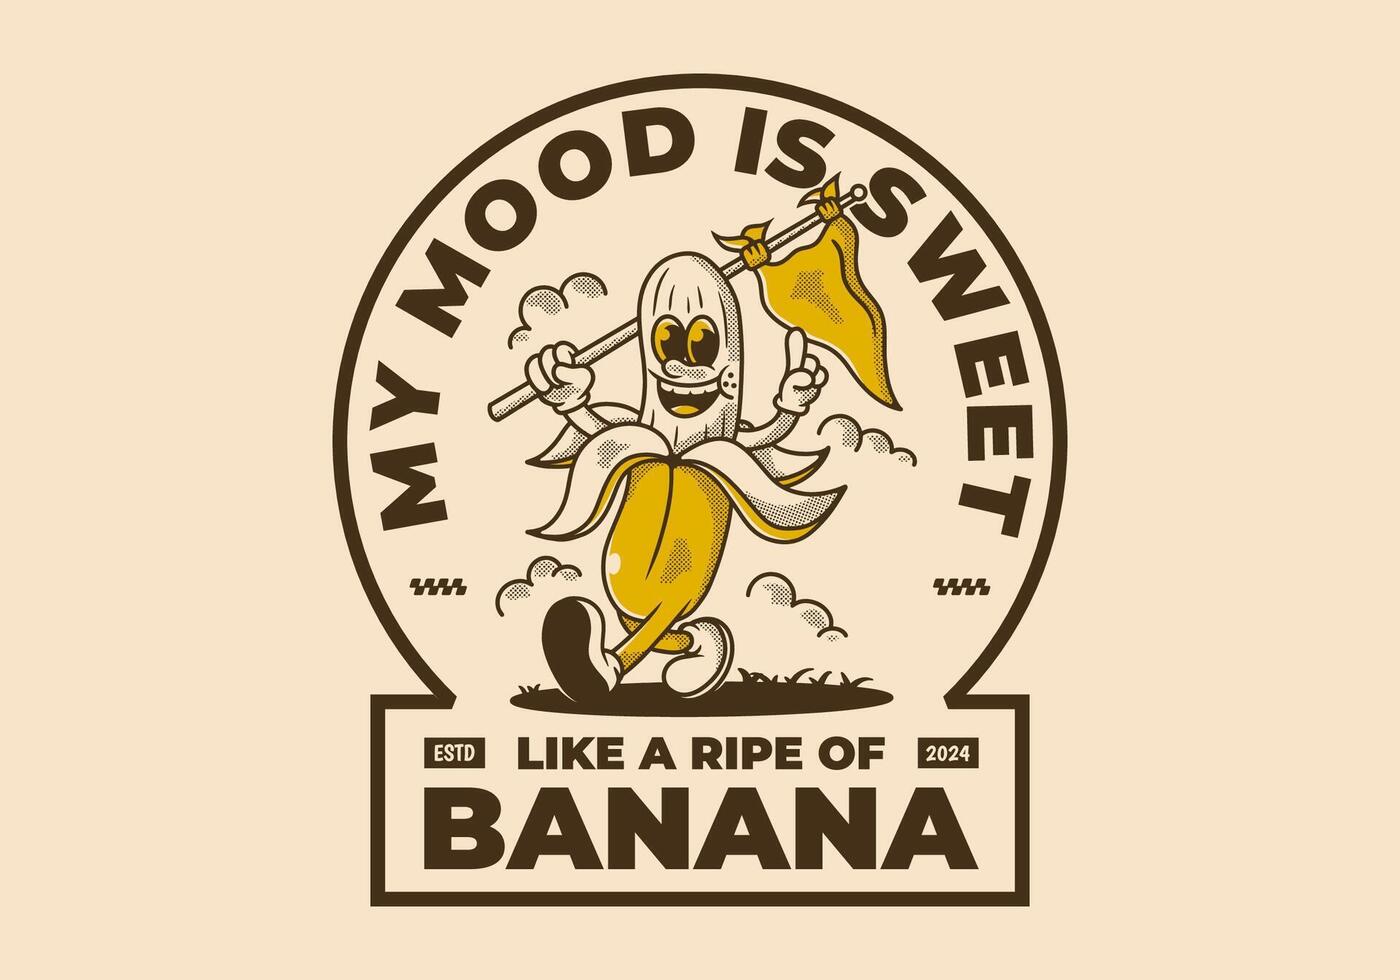 meine Stimmung ist süss, mögen ein reif von Banane. Charakter von Gehen Banane halten ein Dreieck Flagge vektor